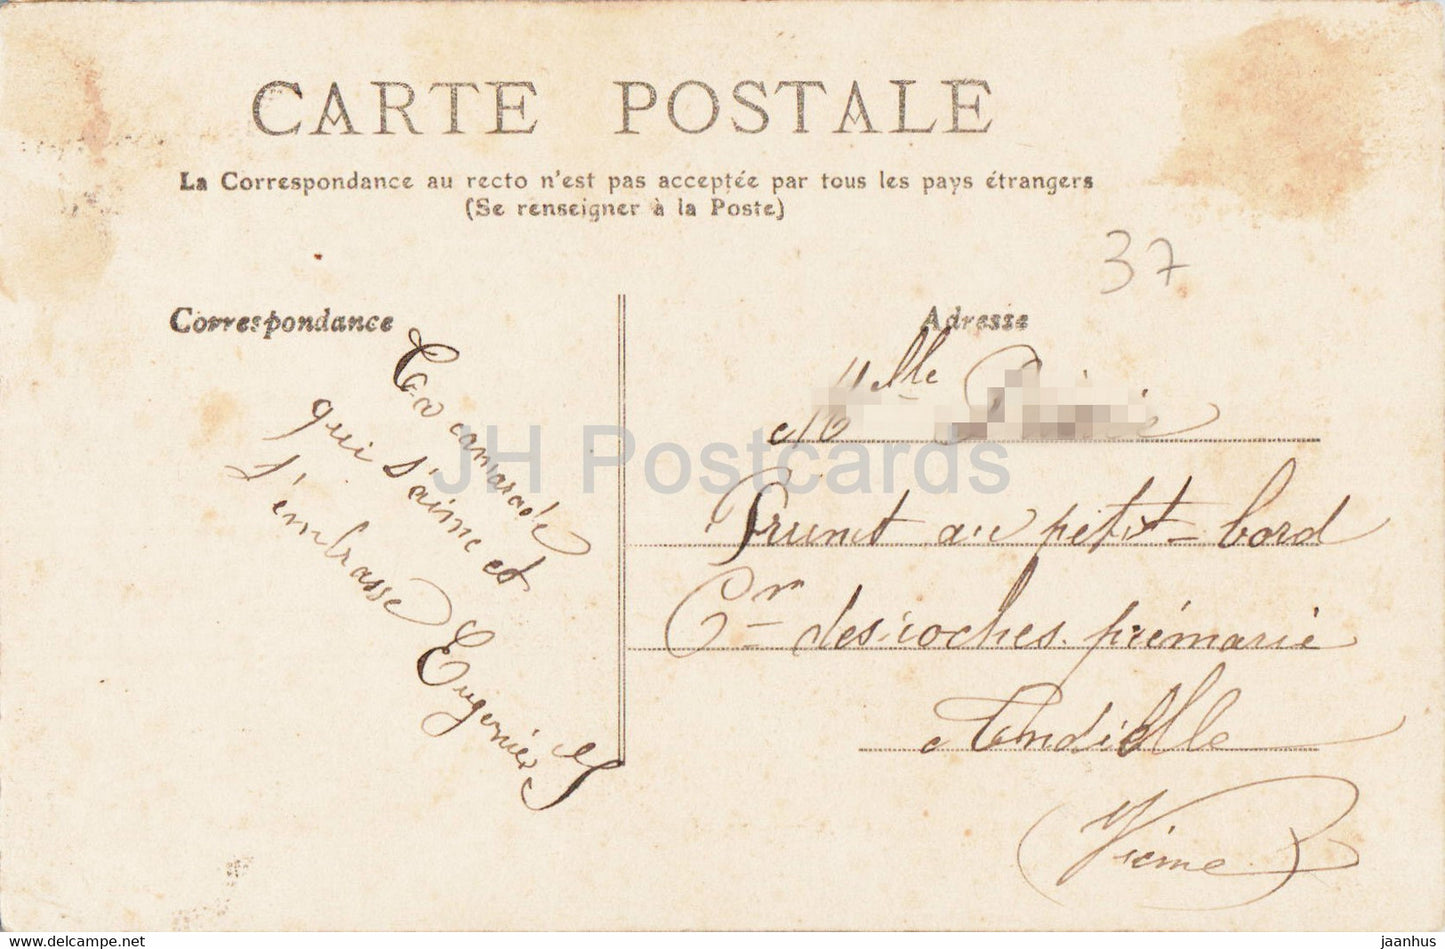 Tours - Le Musée - musée - 57 - carte postale ancienne - France - occasion